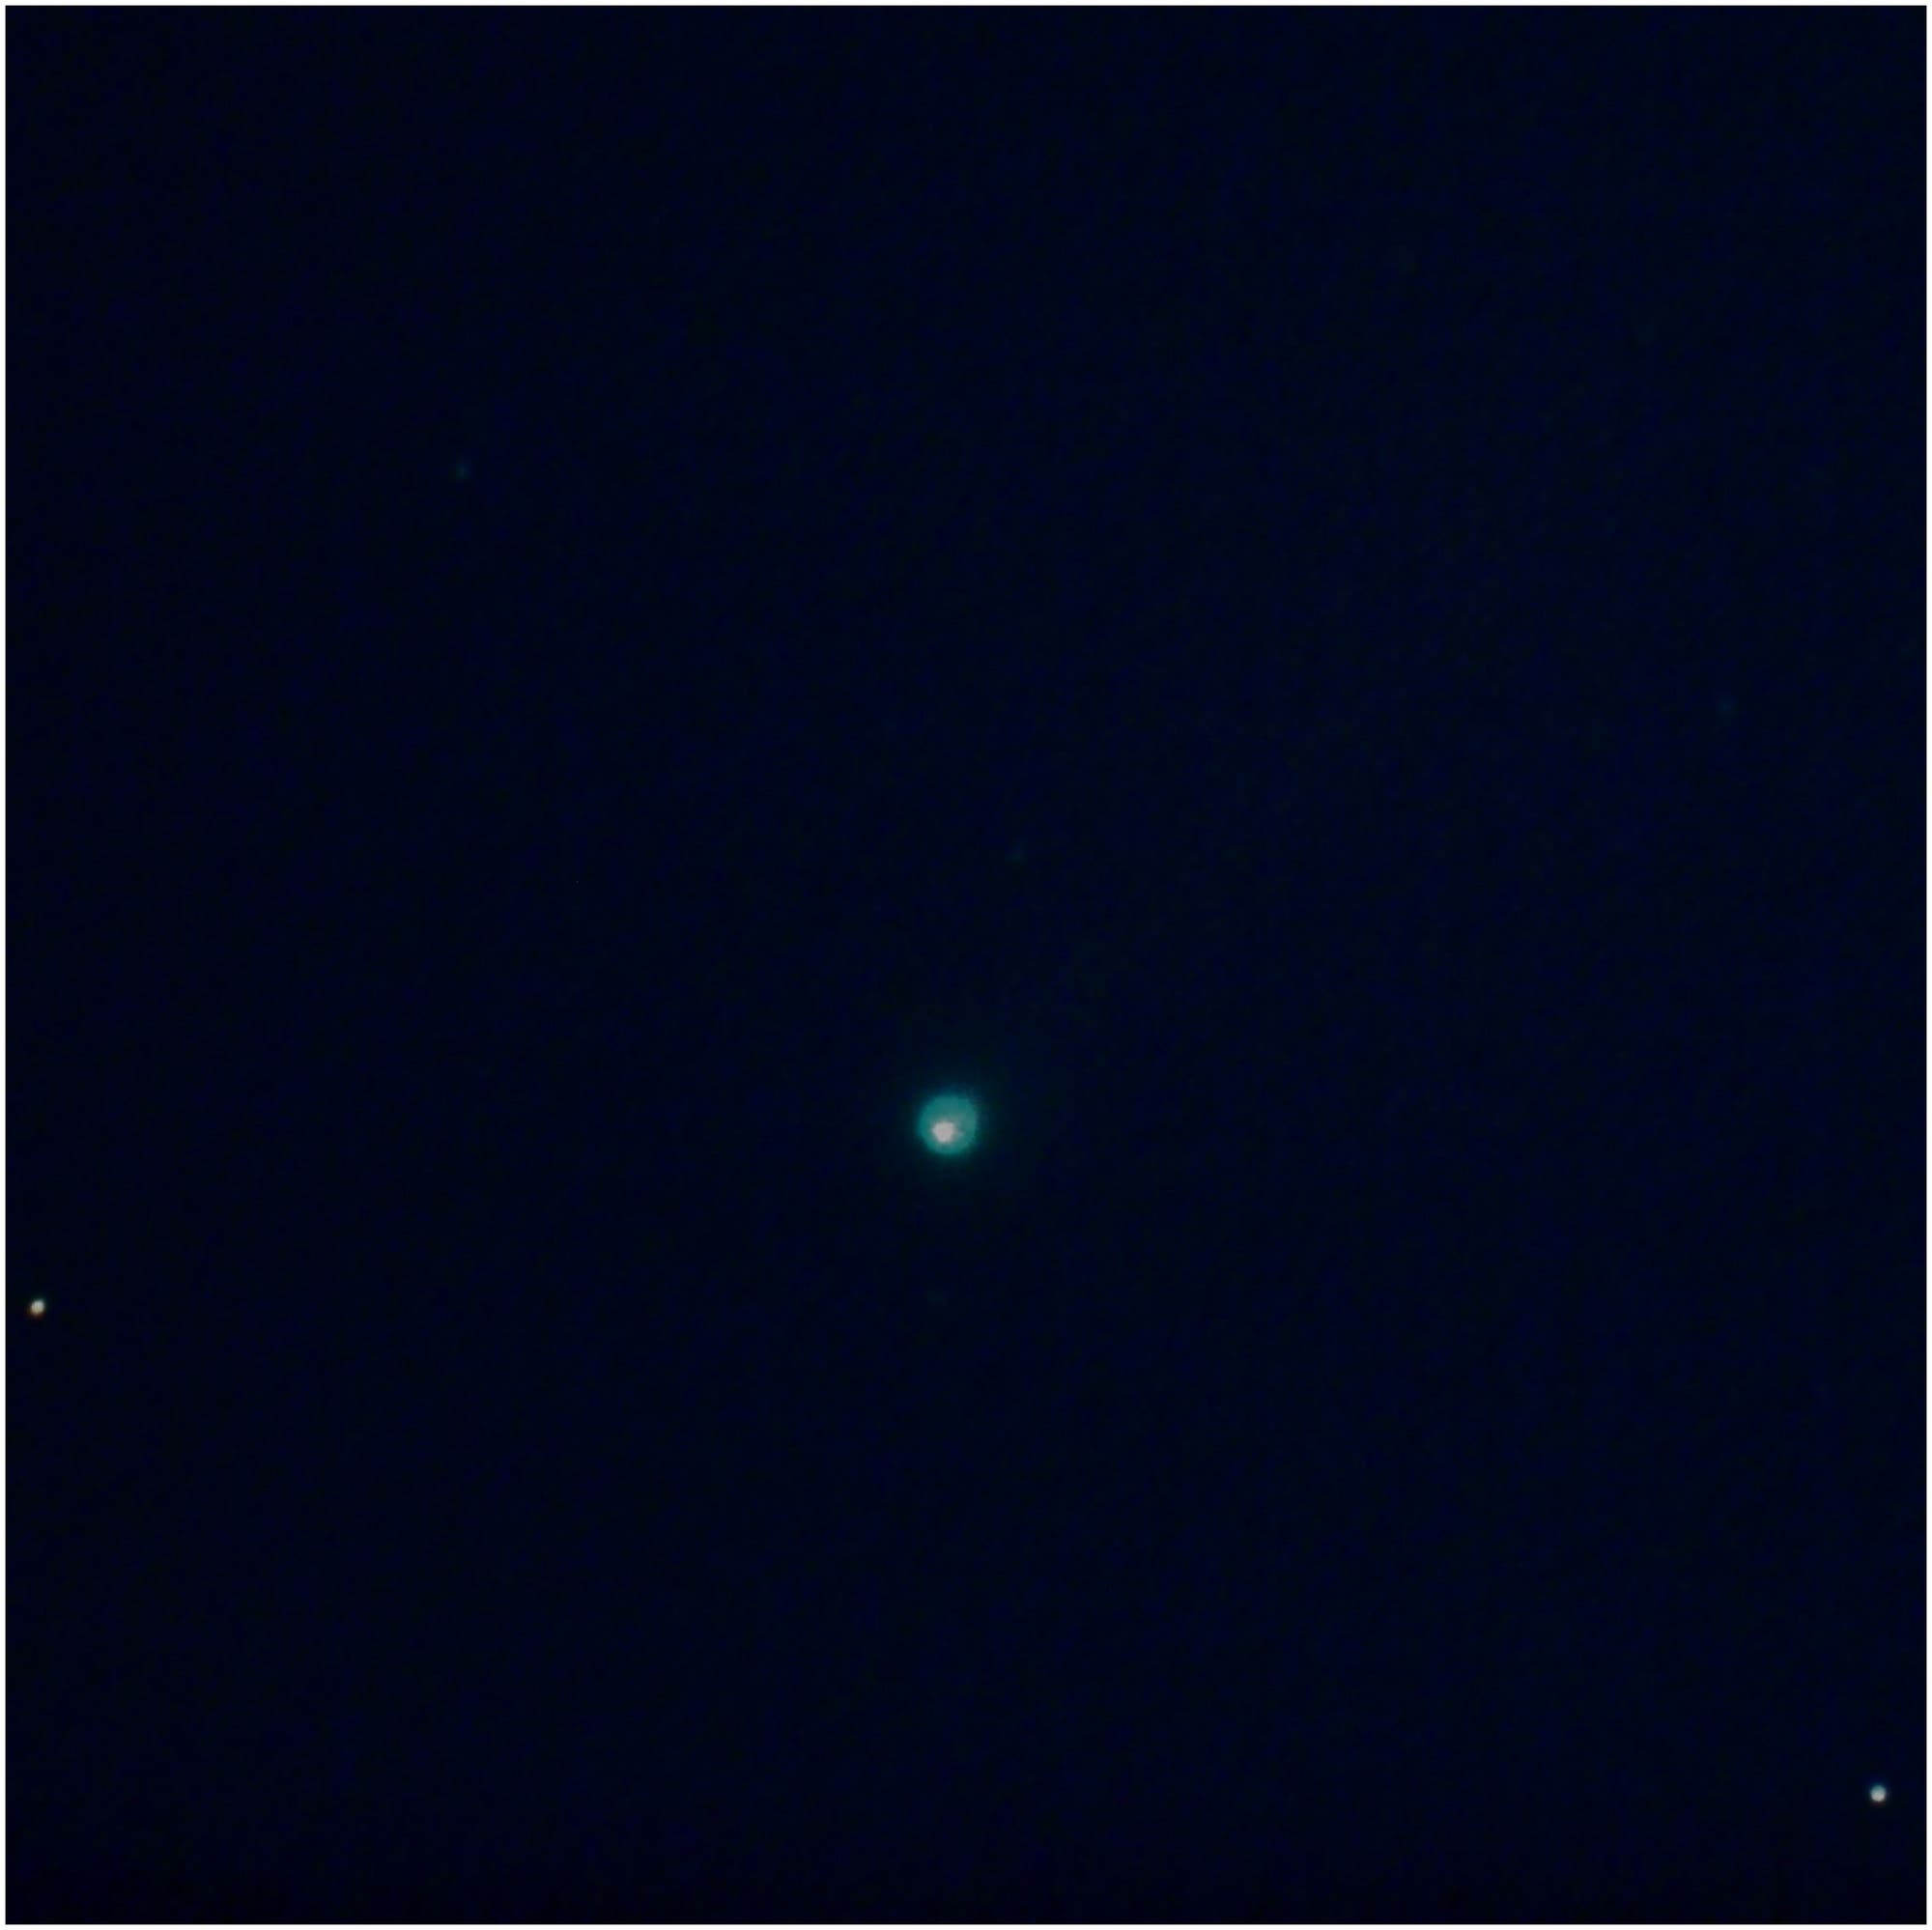 Innere Koma von Komet ISON am 18.11.2013